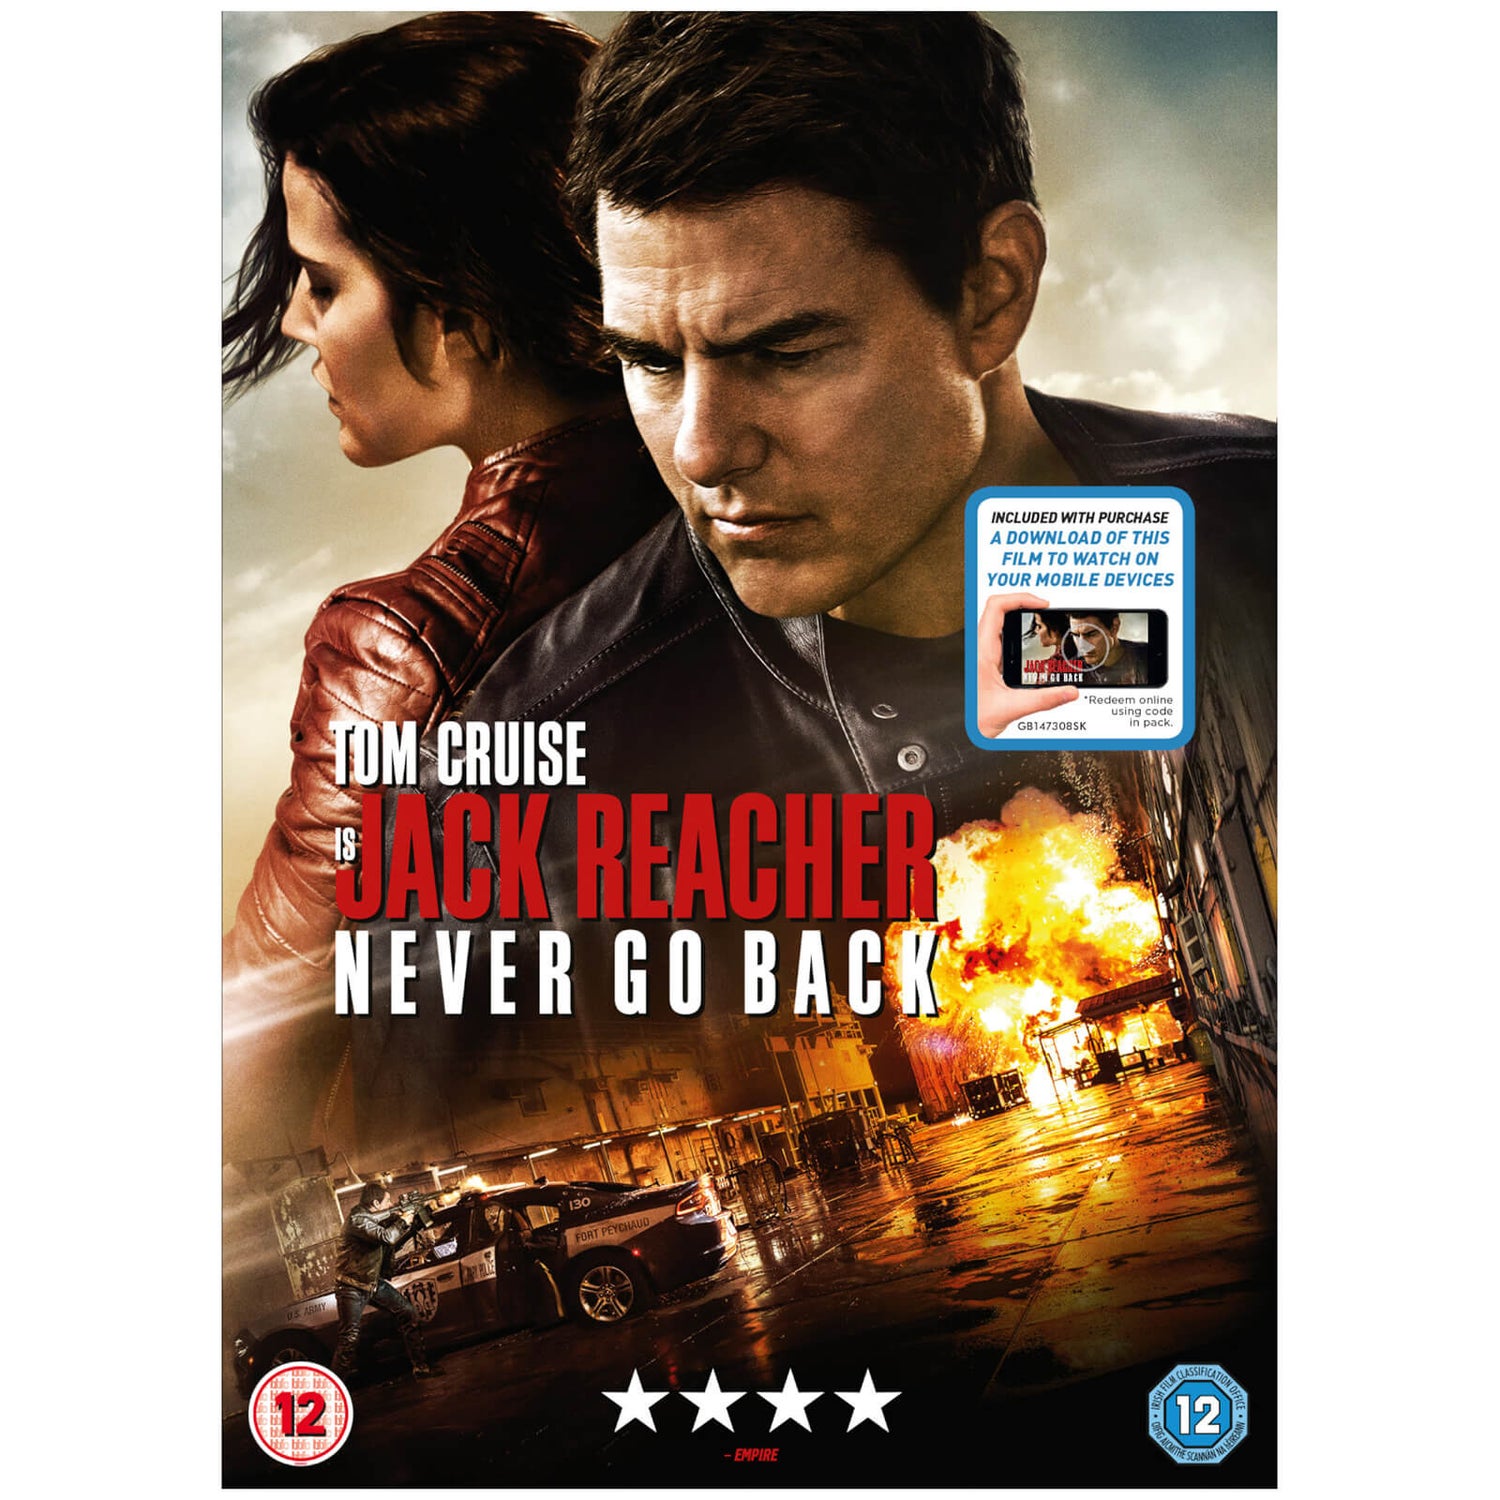 Jack Reacher: Never Go Back (Includes Digital Download)